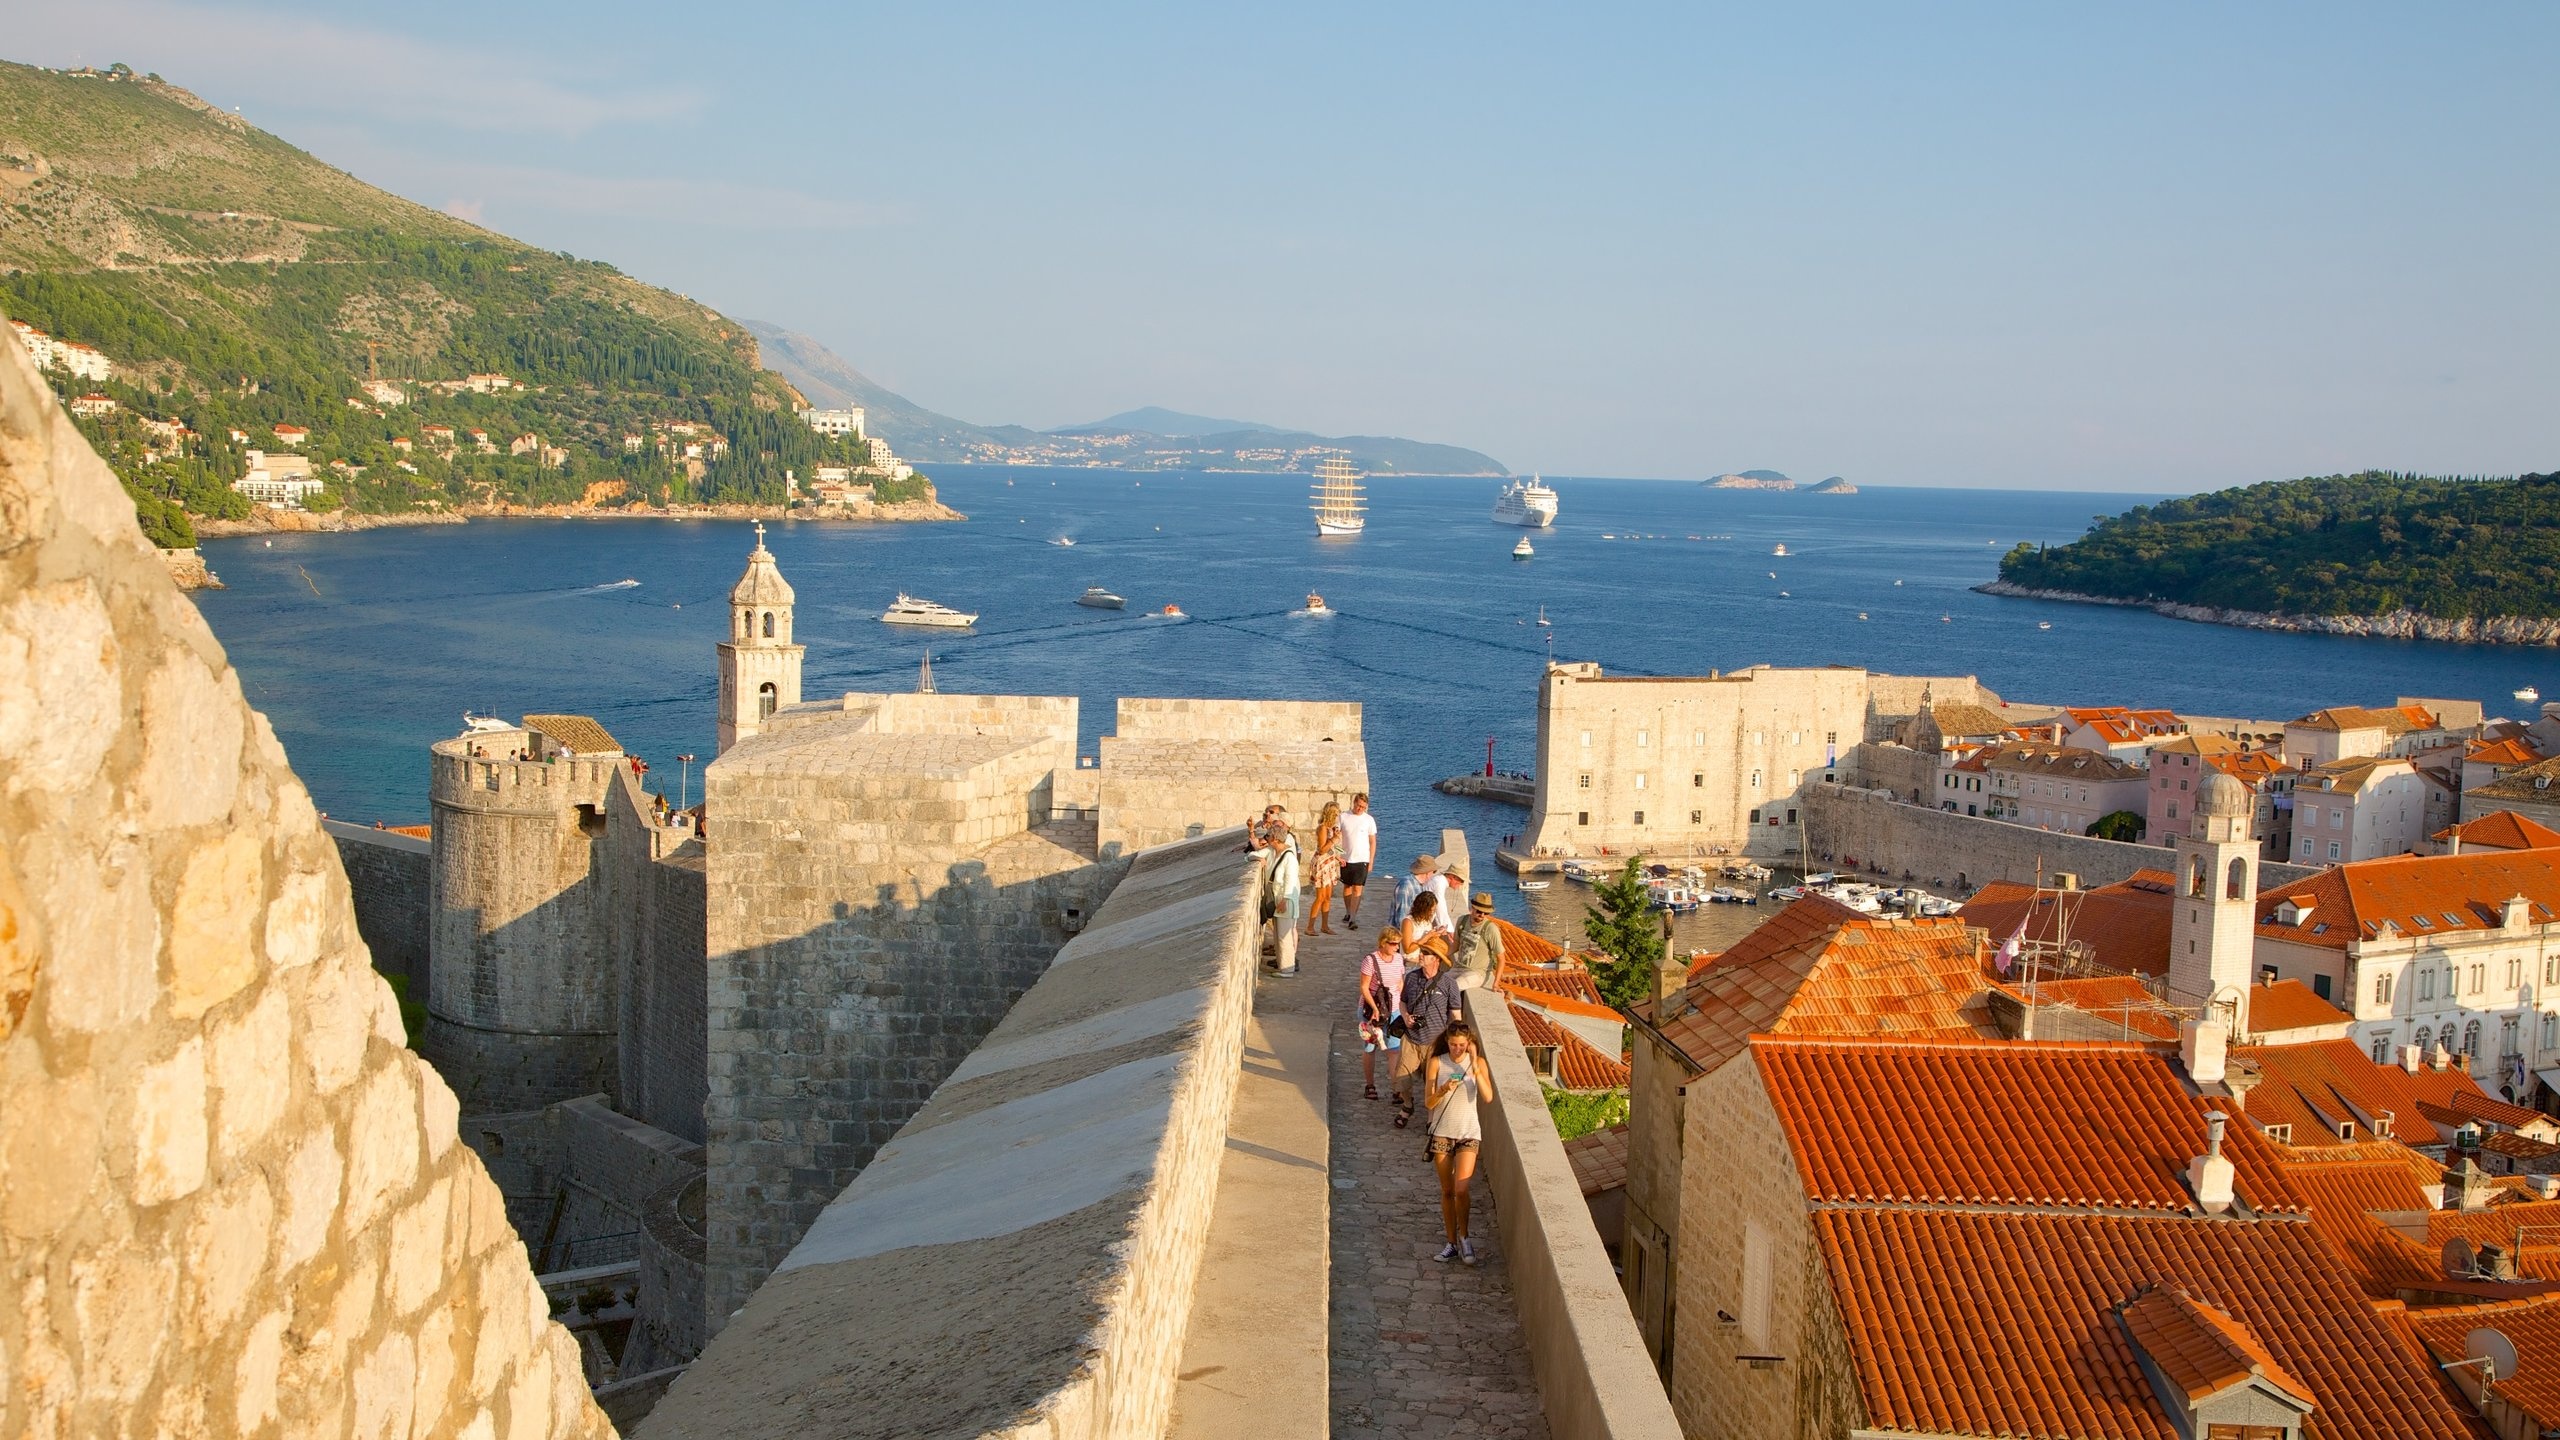 Ferienwohnung walls of Dubrovnik, Ferienhuser, 2560x1440 HD Desktop